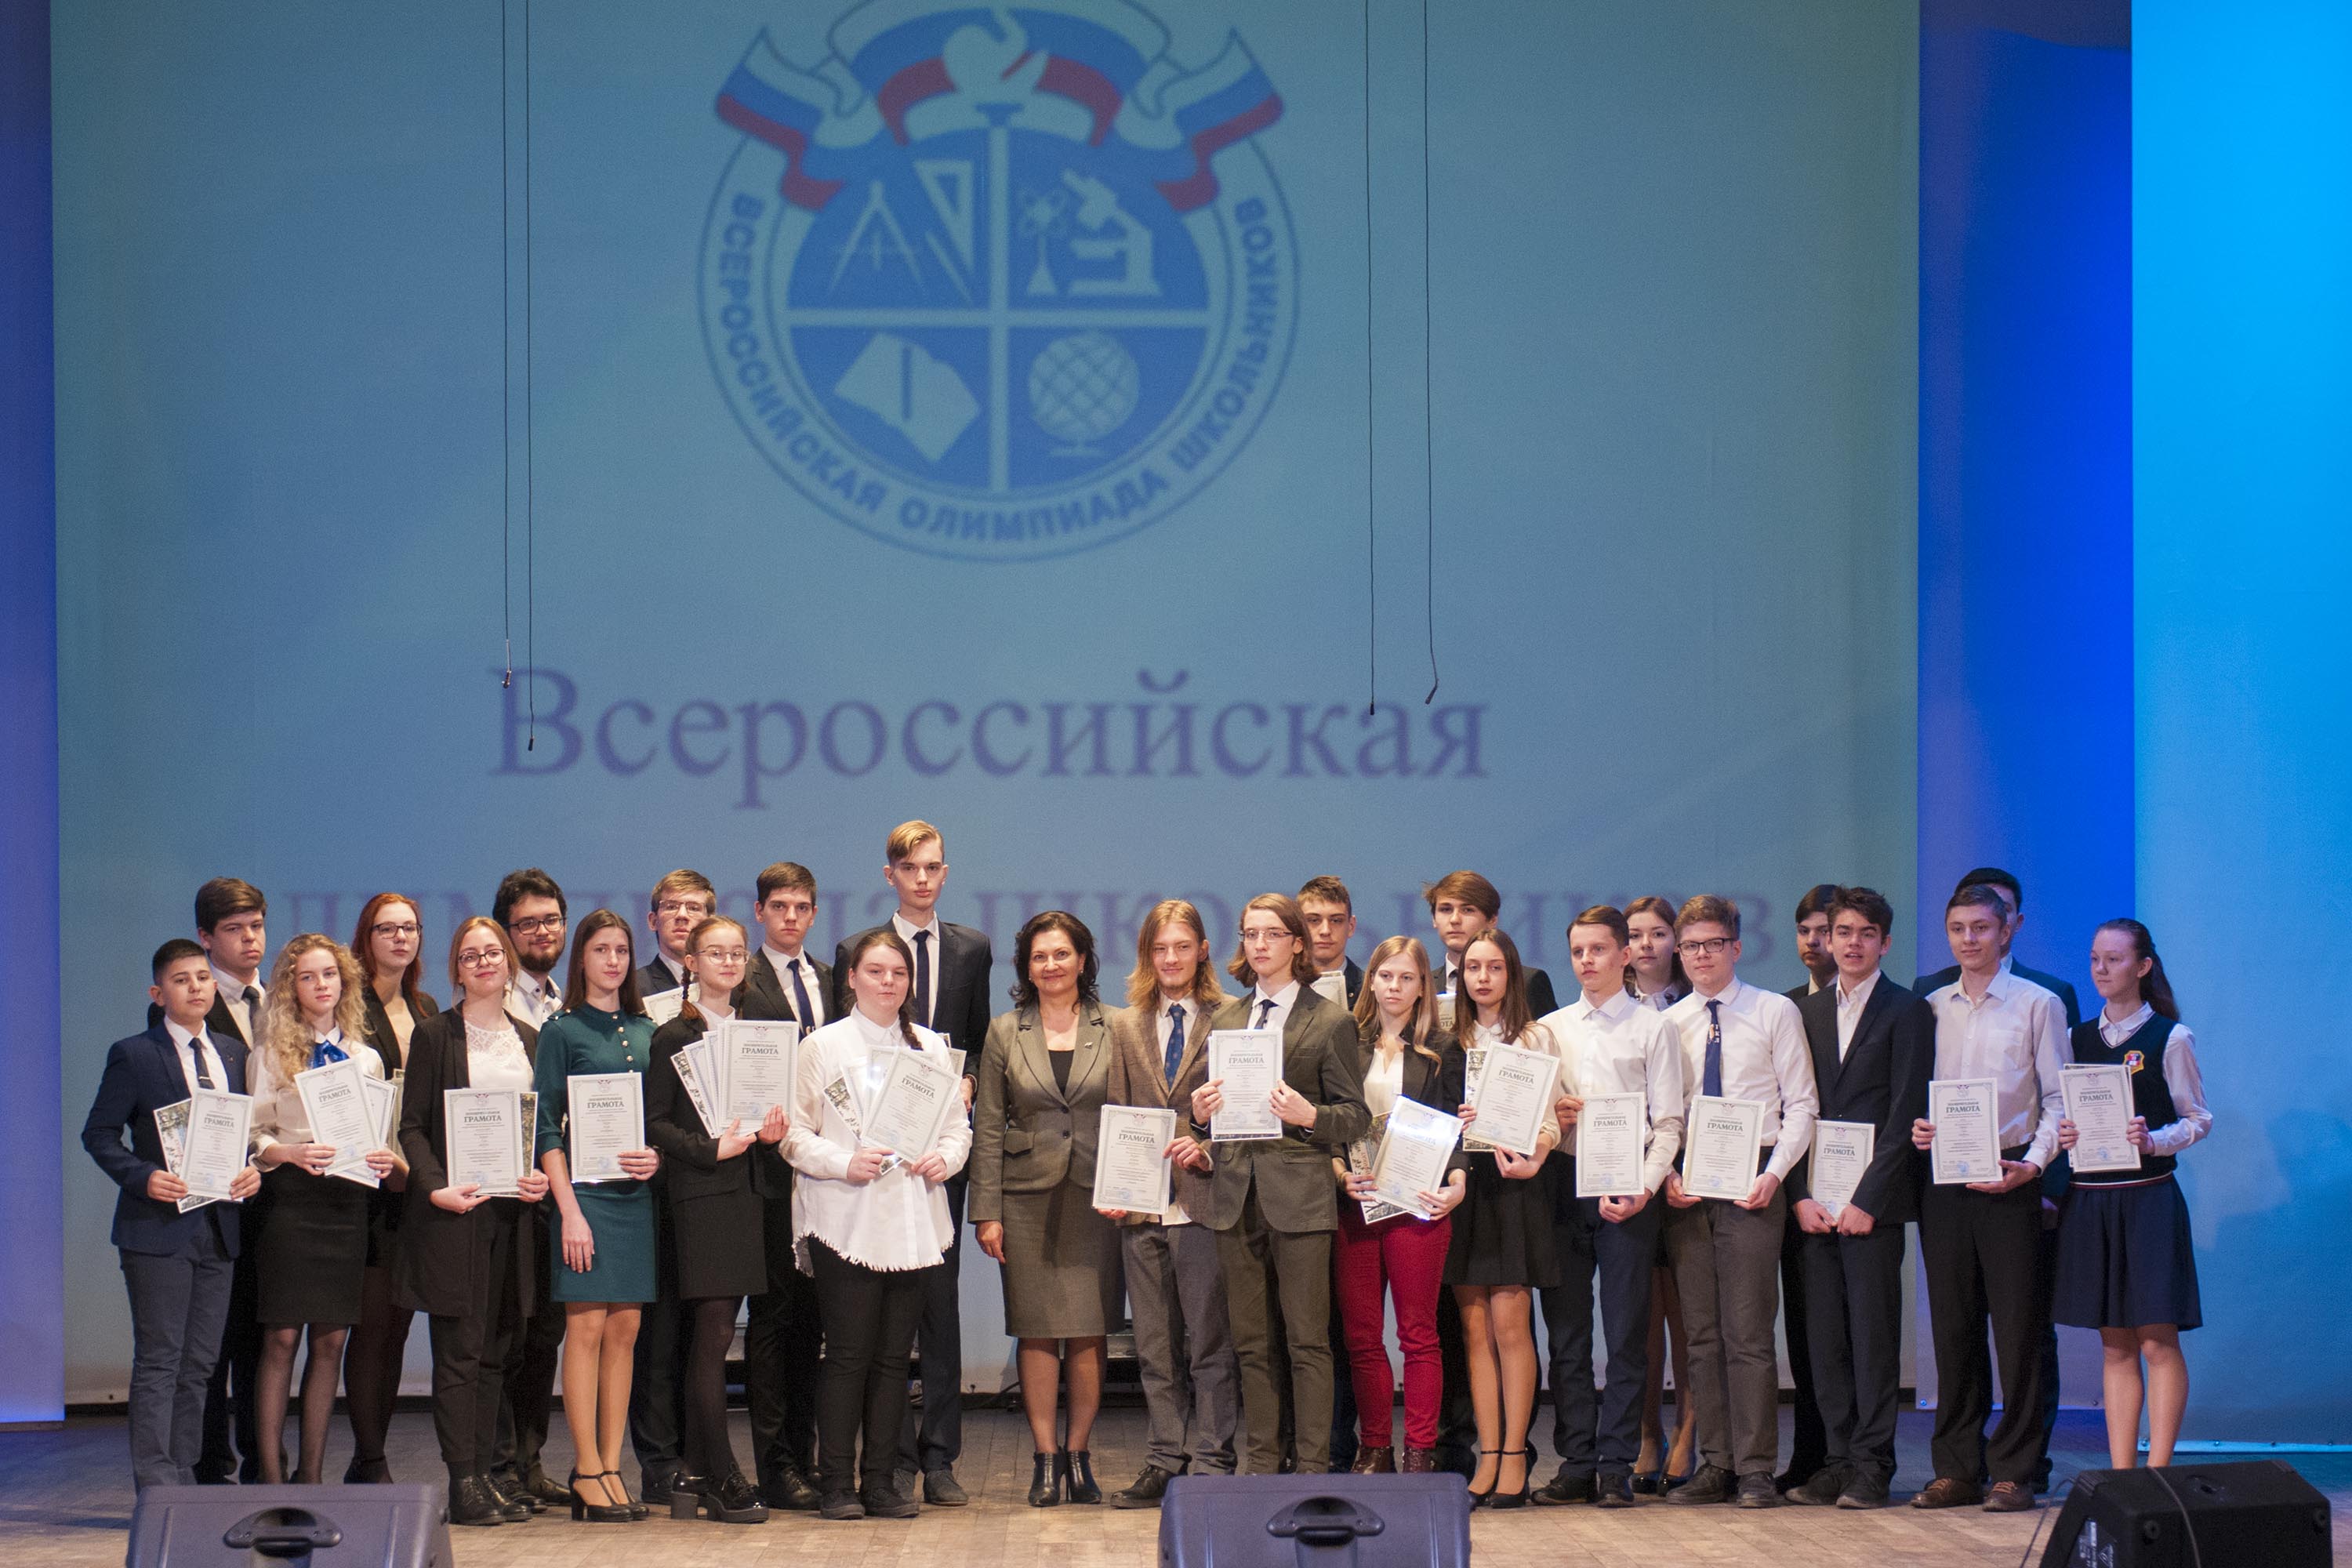  Более 200 лучших школьников Кузбасса получили заслуженные награды